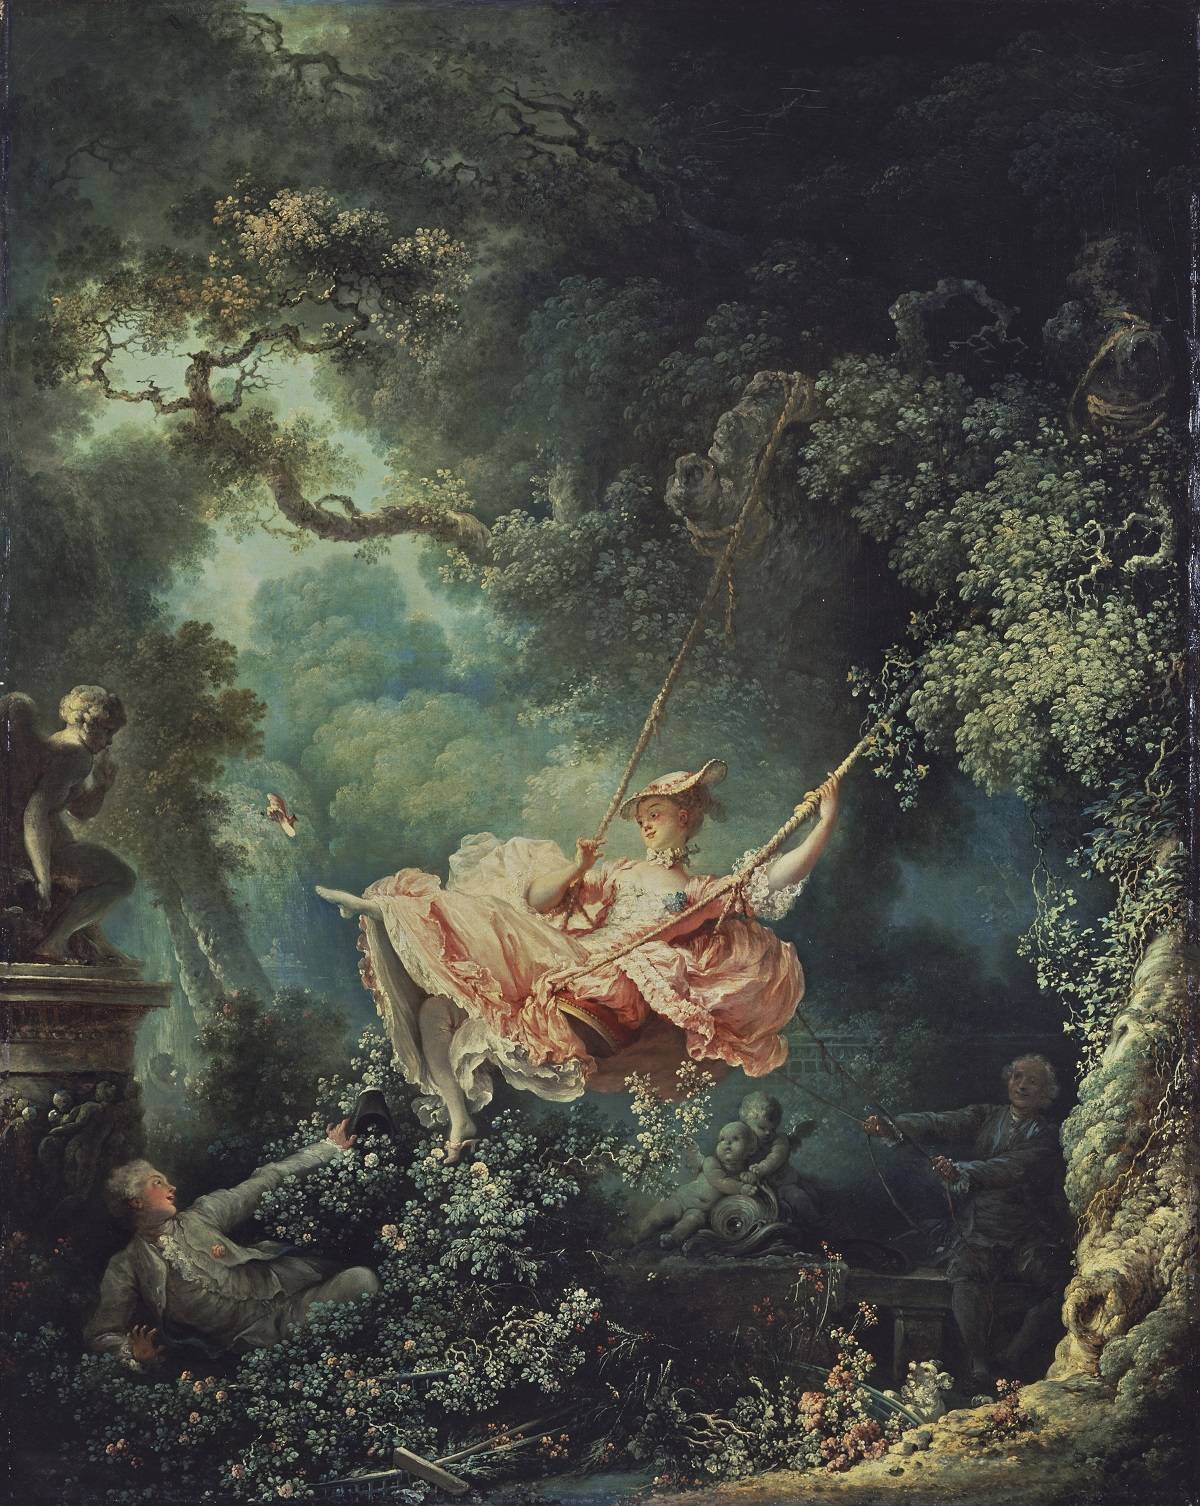 Jean-Honoré Fragonard, Les hasards heureux de lescarpolette (The Swing), France, c. 1767 – 1768 